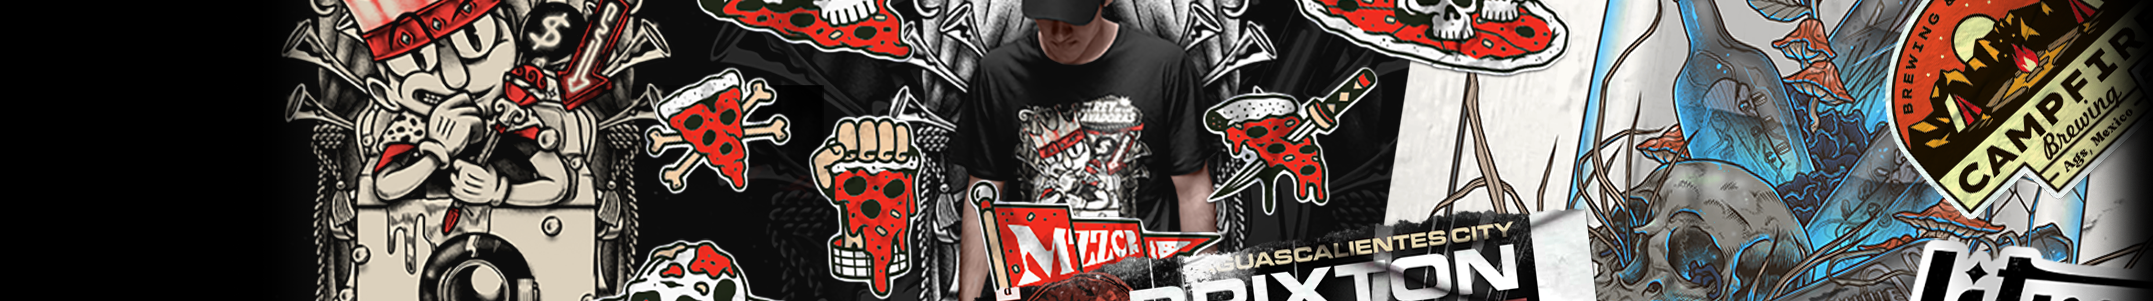 Jesús Mendoza Chesst's profile banner